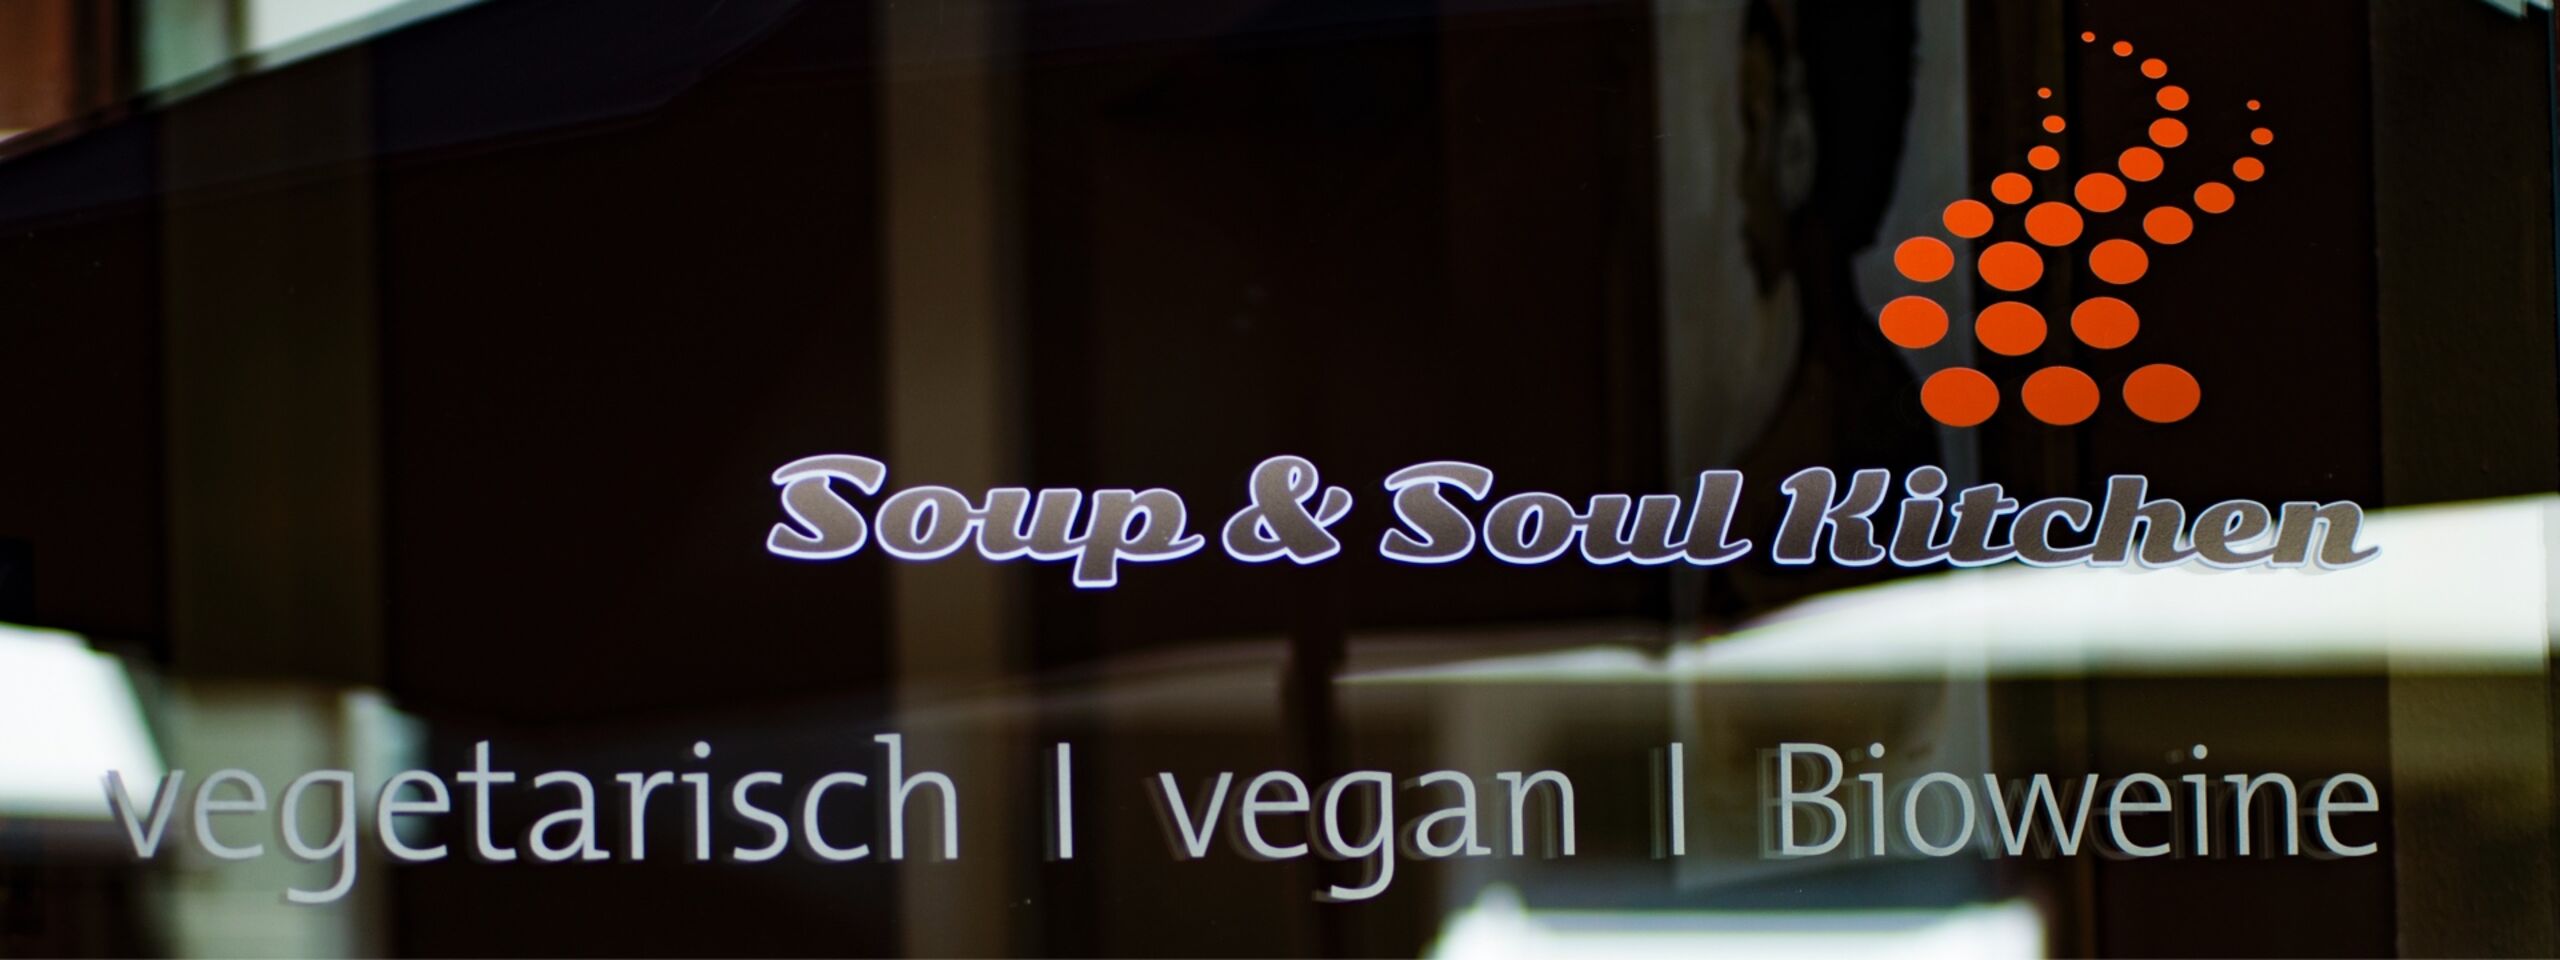 A photo of Soup & Soul Kitchen